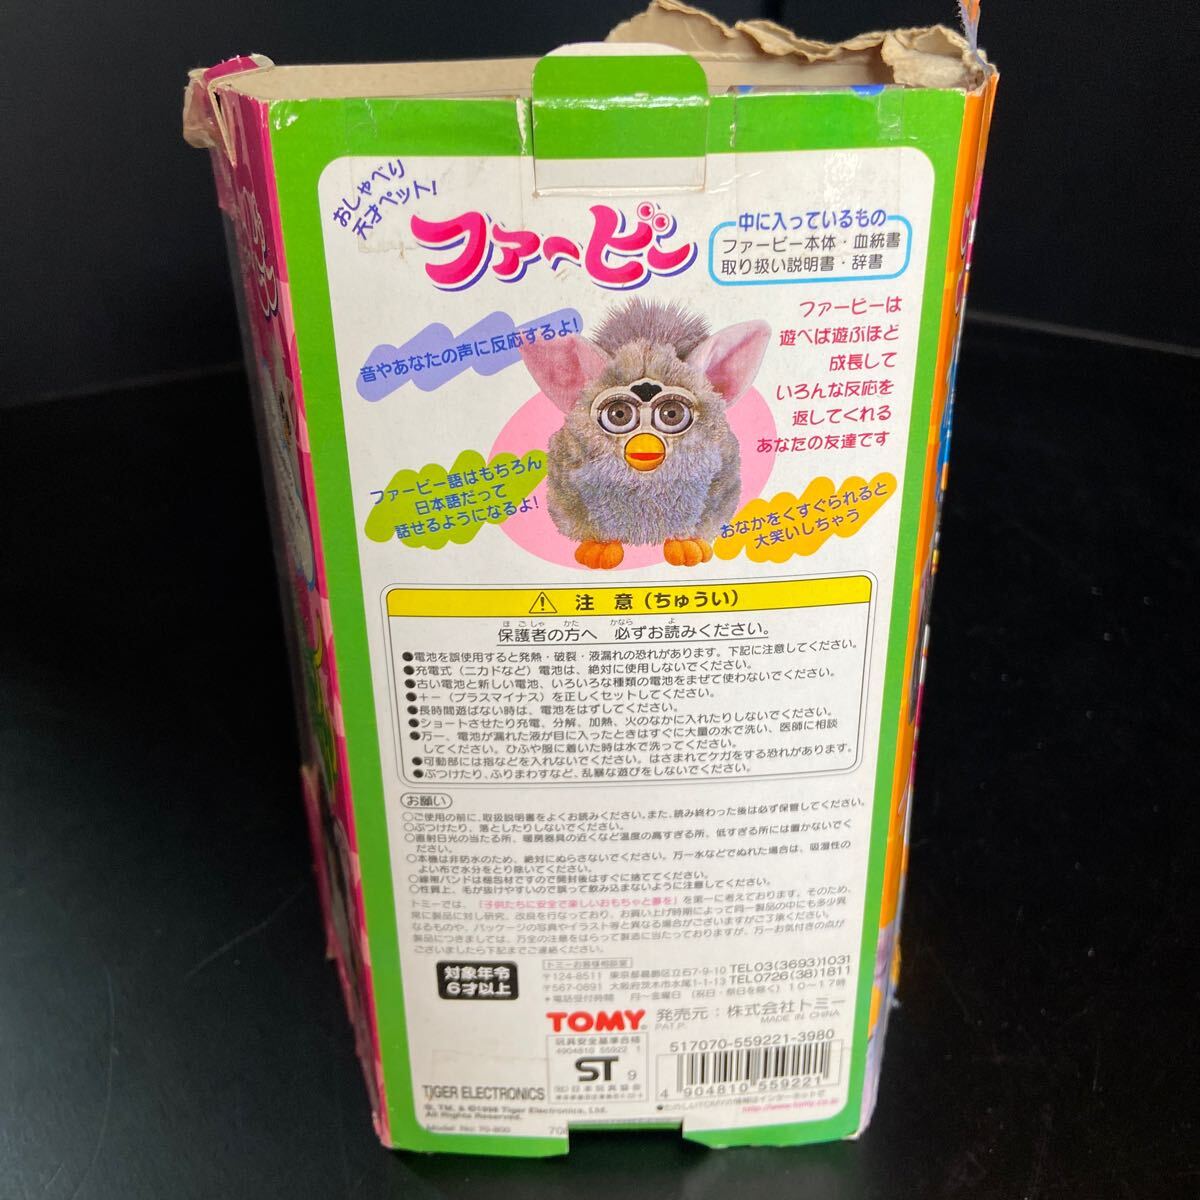  Tommy Furby выпуск на японском языке 70-800..... небо лет домашнее животное красный серия с руководством пользователя рабочее состояние подтверждено [ б/у товар ]